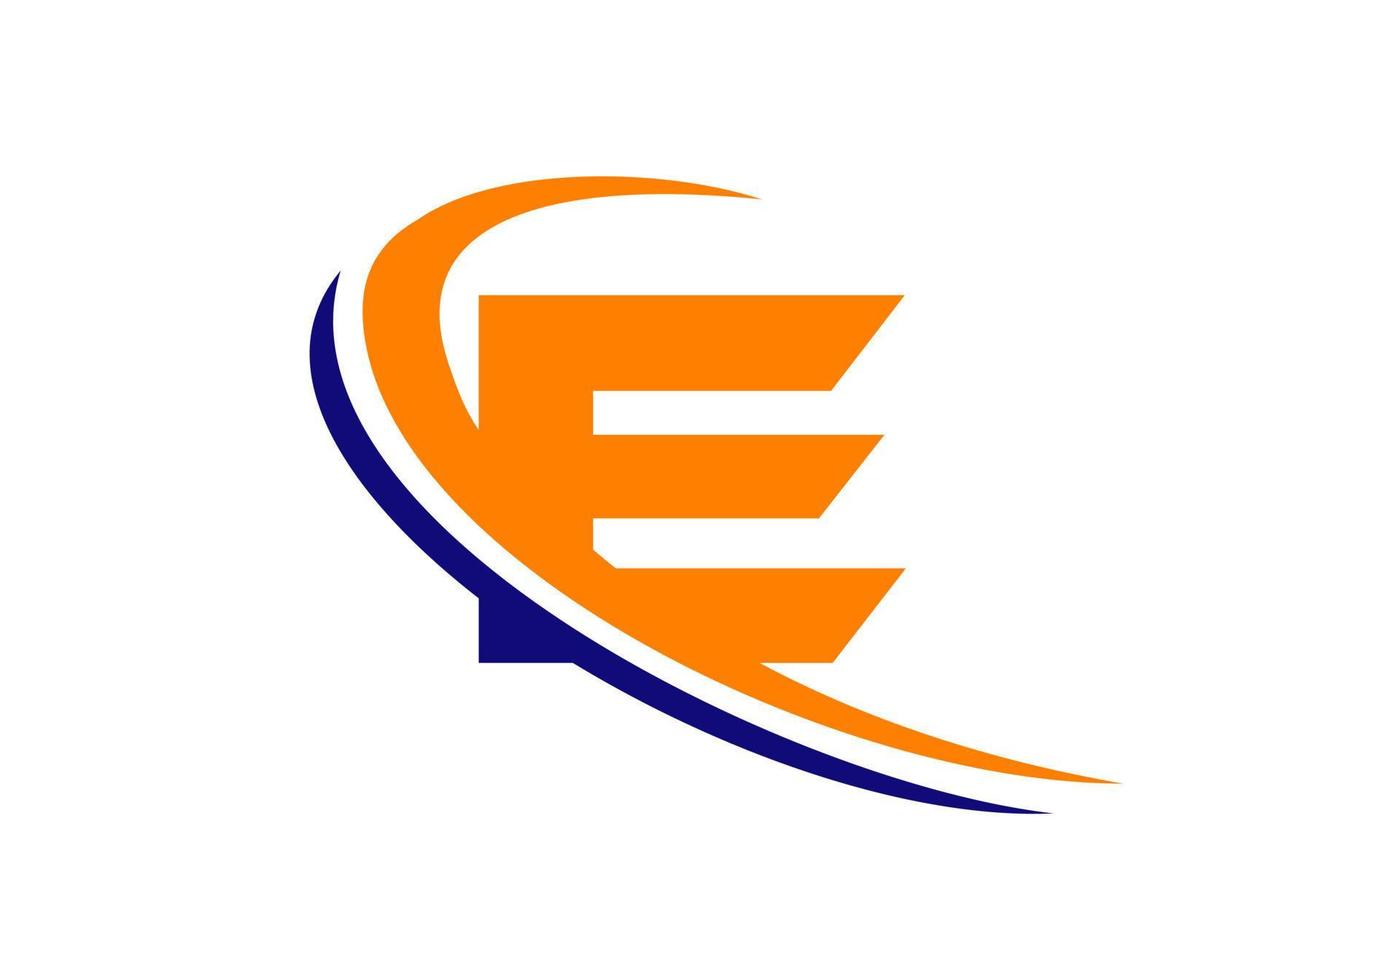 modèle de logo d'entreprise lettre e. conception initiale du logo e pour l'immobilier, la finance, le marketing, la gestion, la construction, etc. vecteur